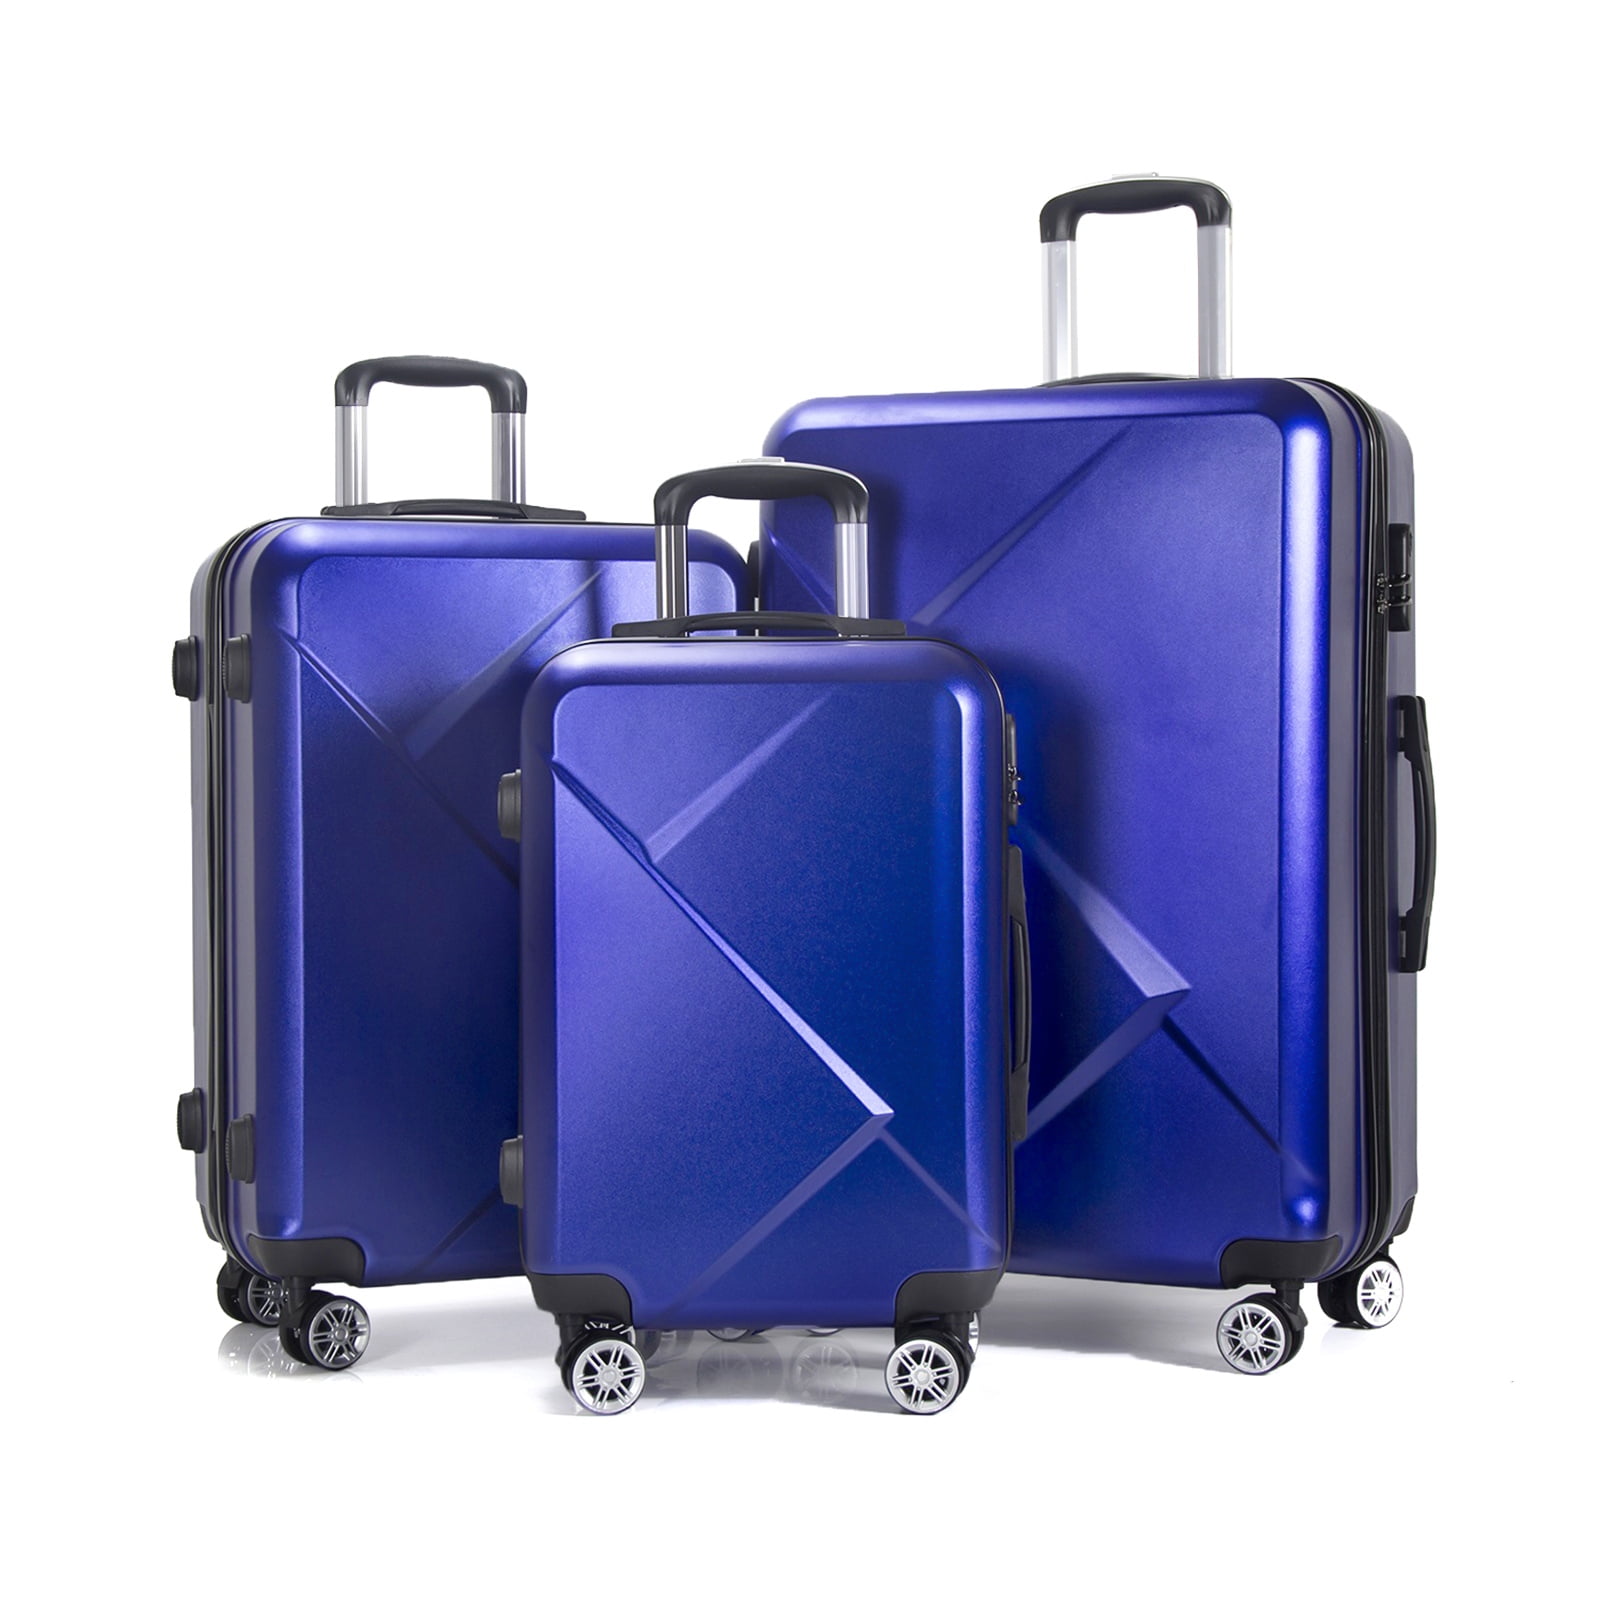 Safari trolley bag / luggage bag (set of3)